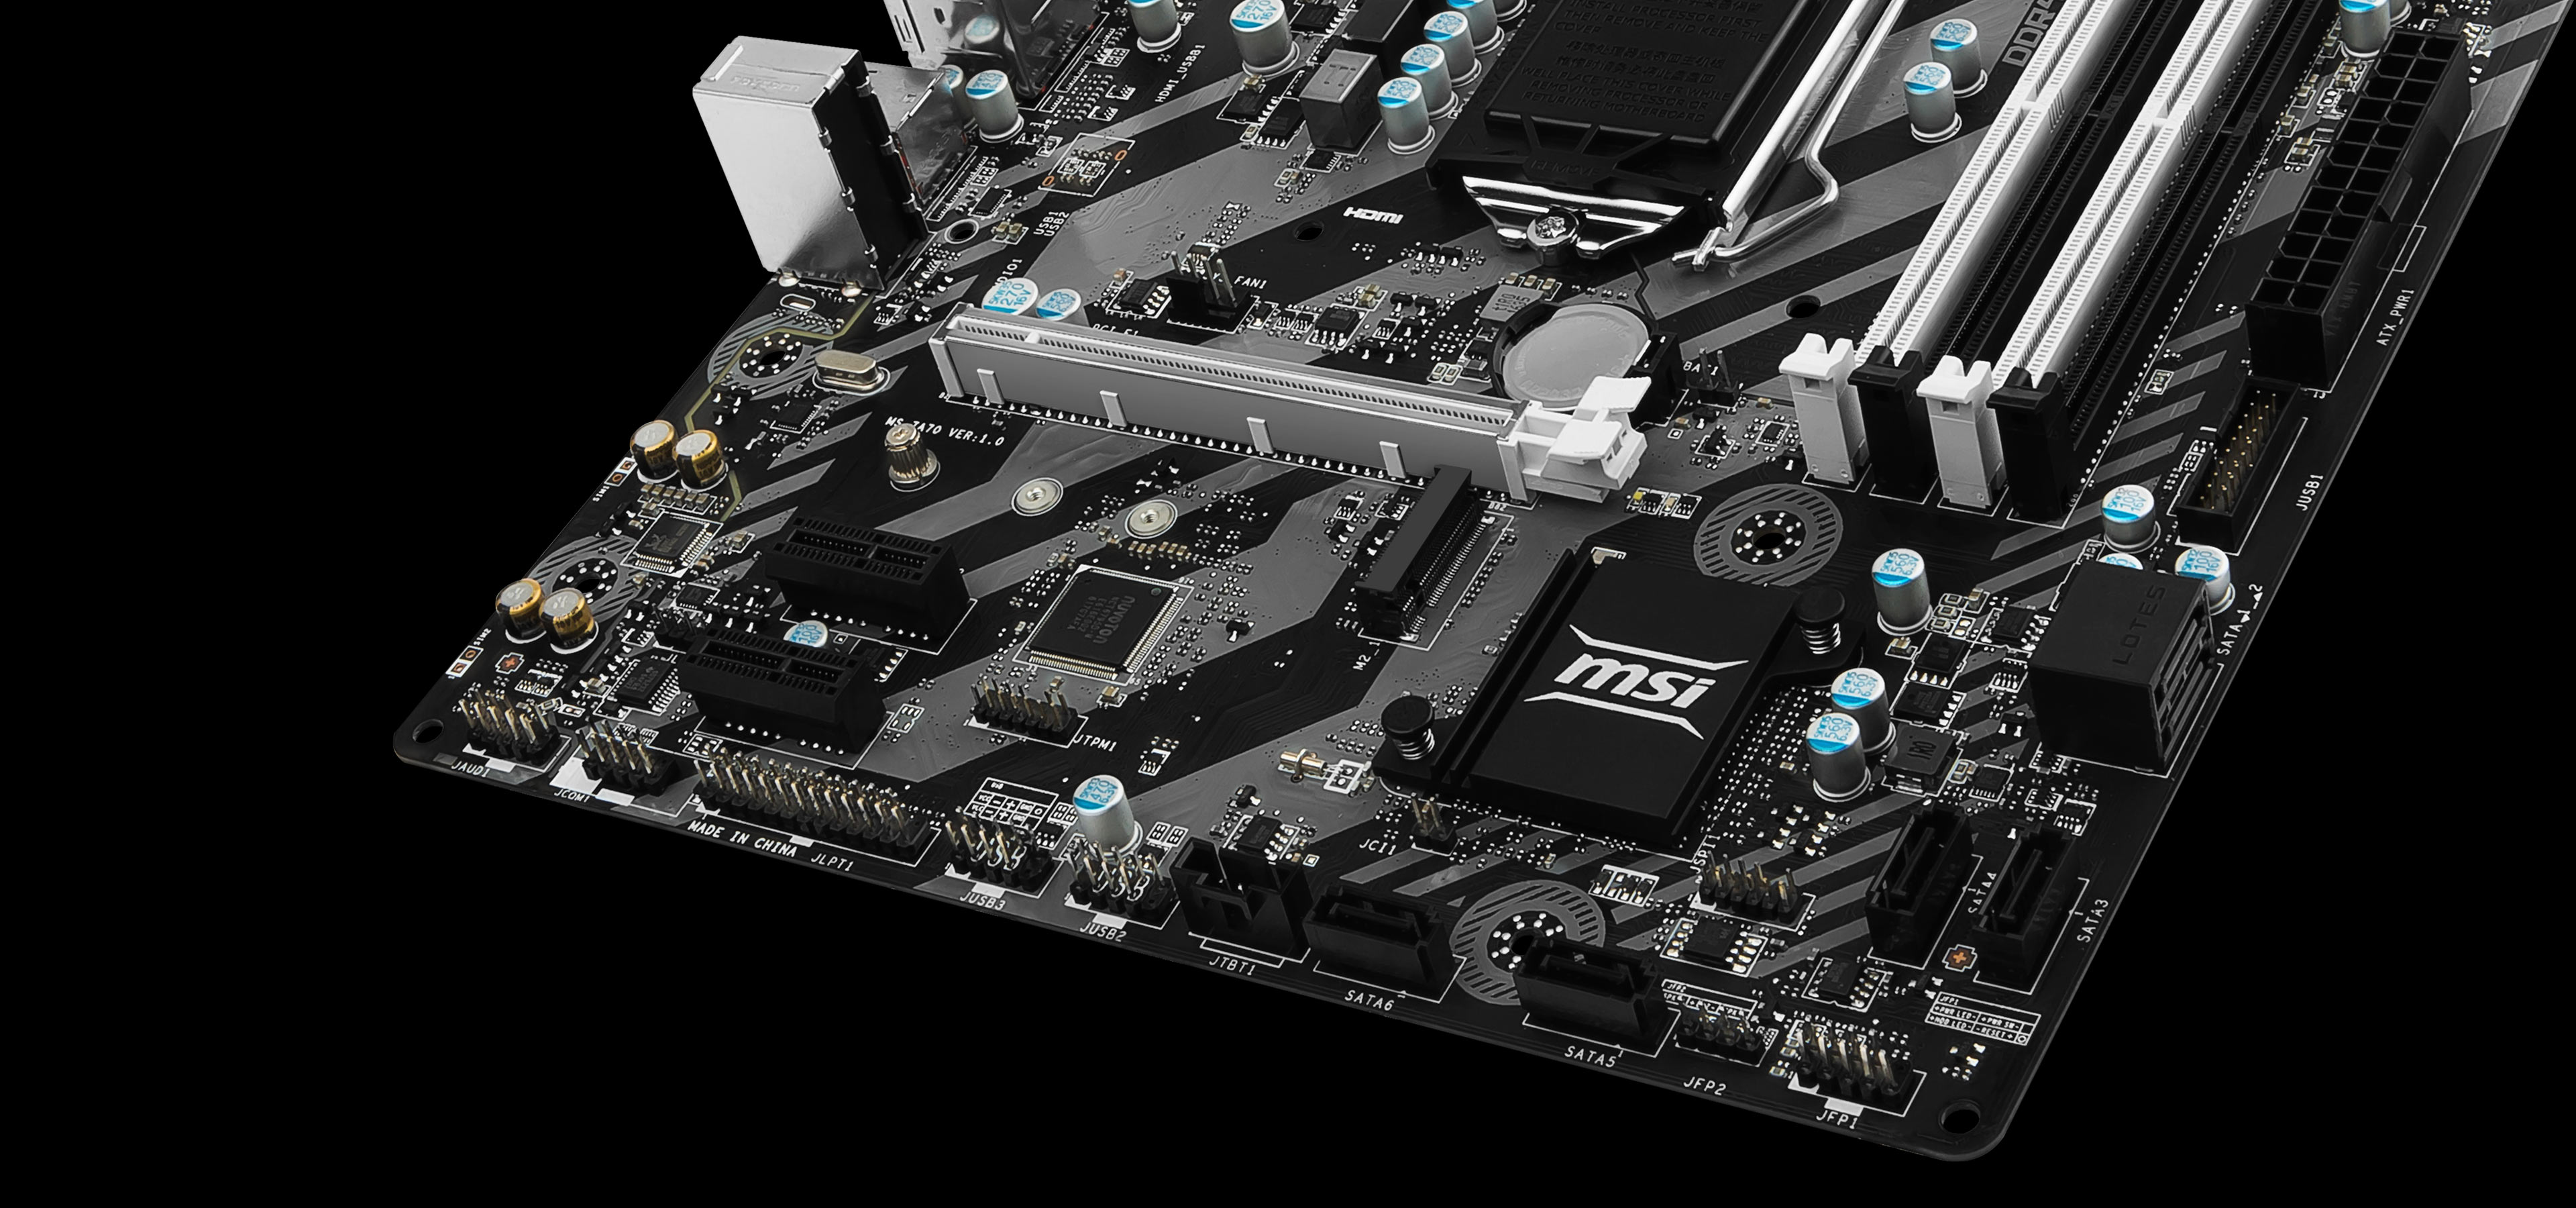 MSI H270M BAZOOKA VR Ready M-ATX Motherboard - Black (Intel Core i3/i5/i7 Processor, LGA 1151, Dual Channel DDR4, USB 3.1, PCI-E 3.0, PCI-E x1, Sata 6 GB)